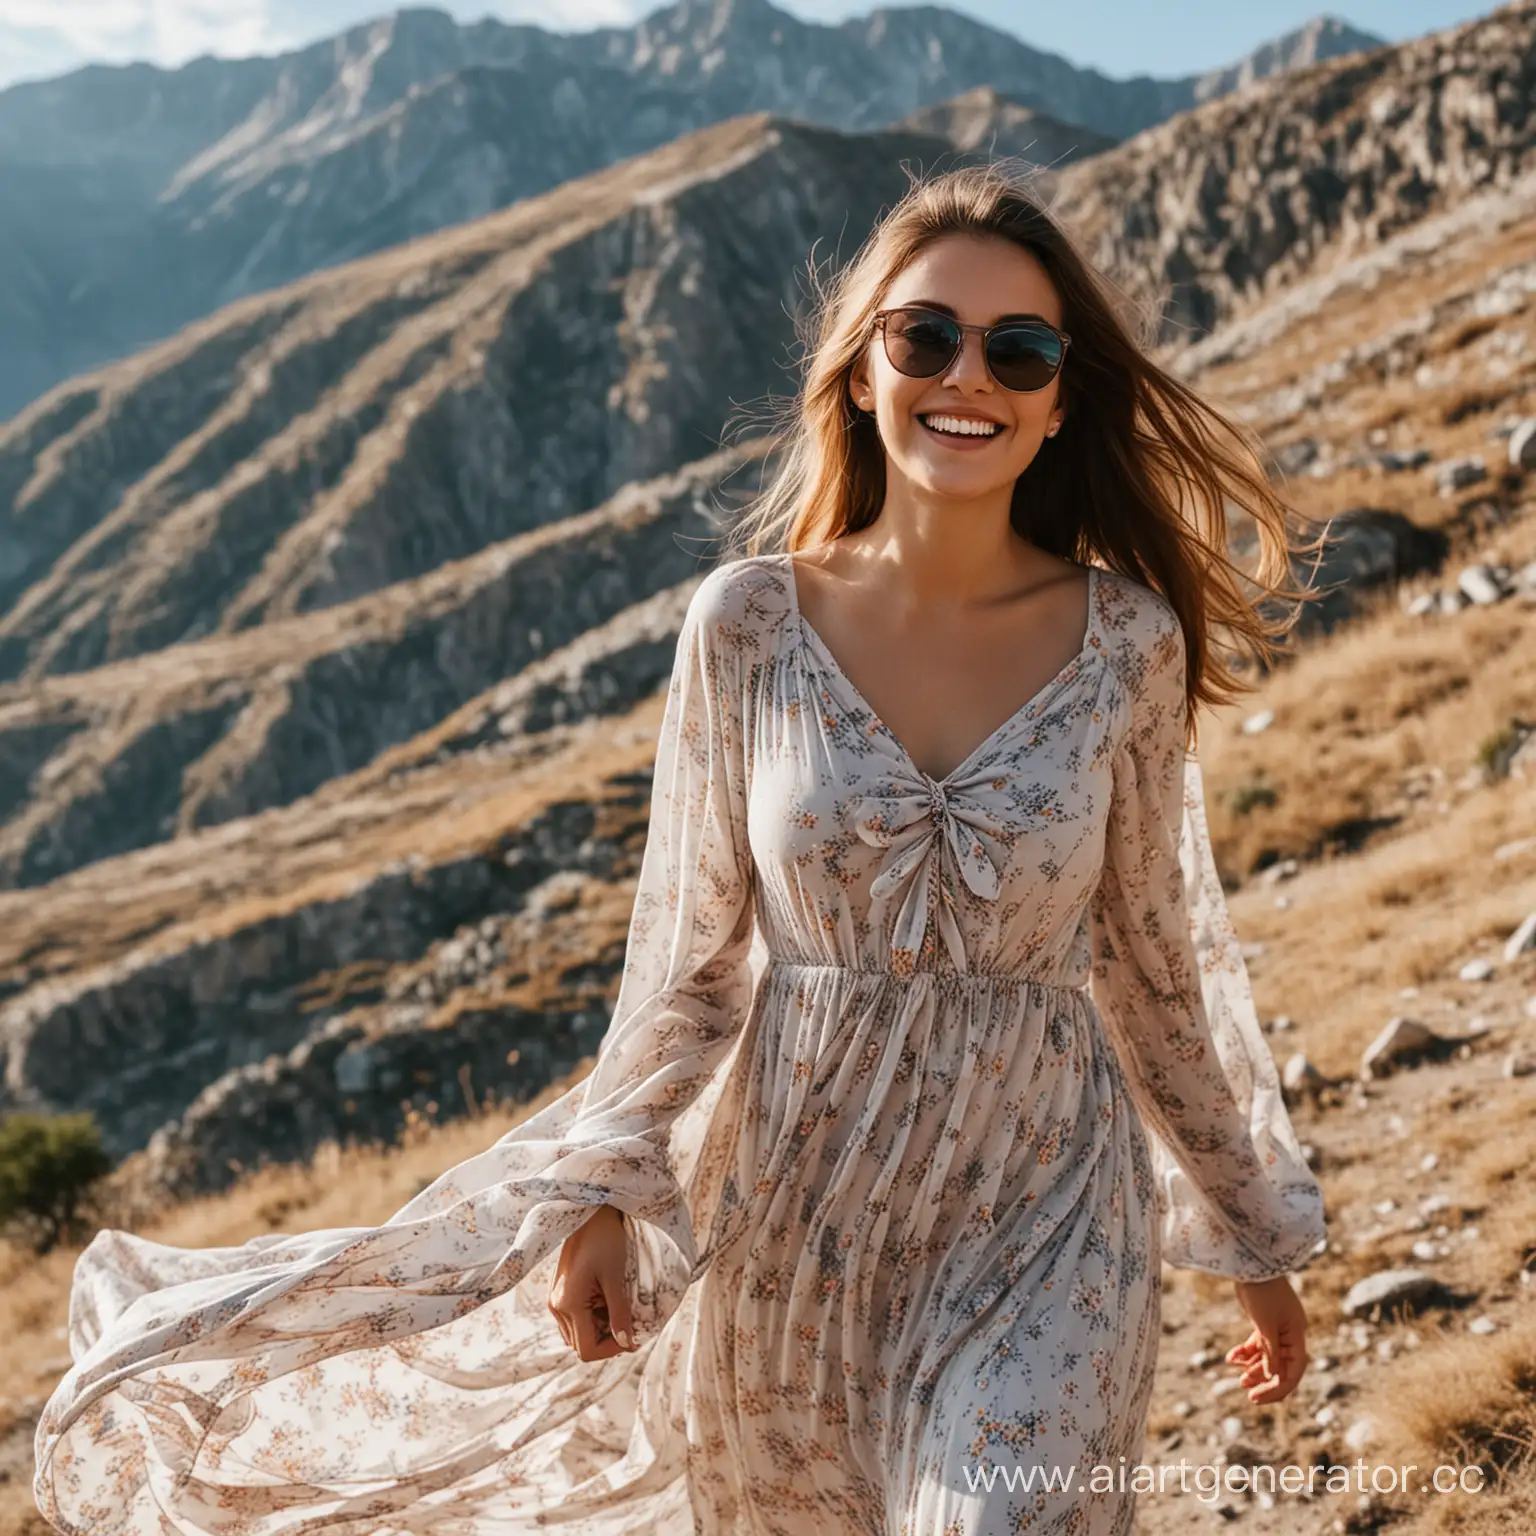 девушка в горах около 20 лет солнцезащитные очки на голове улыбается и позирует в развивающемся платье
